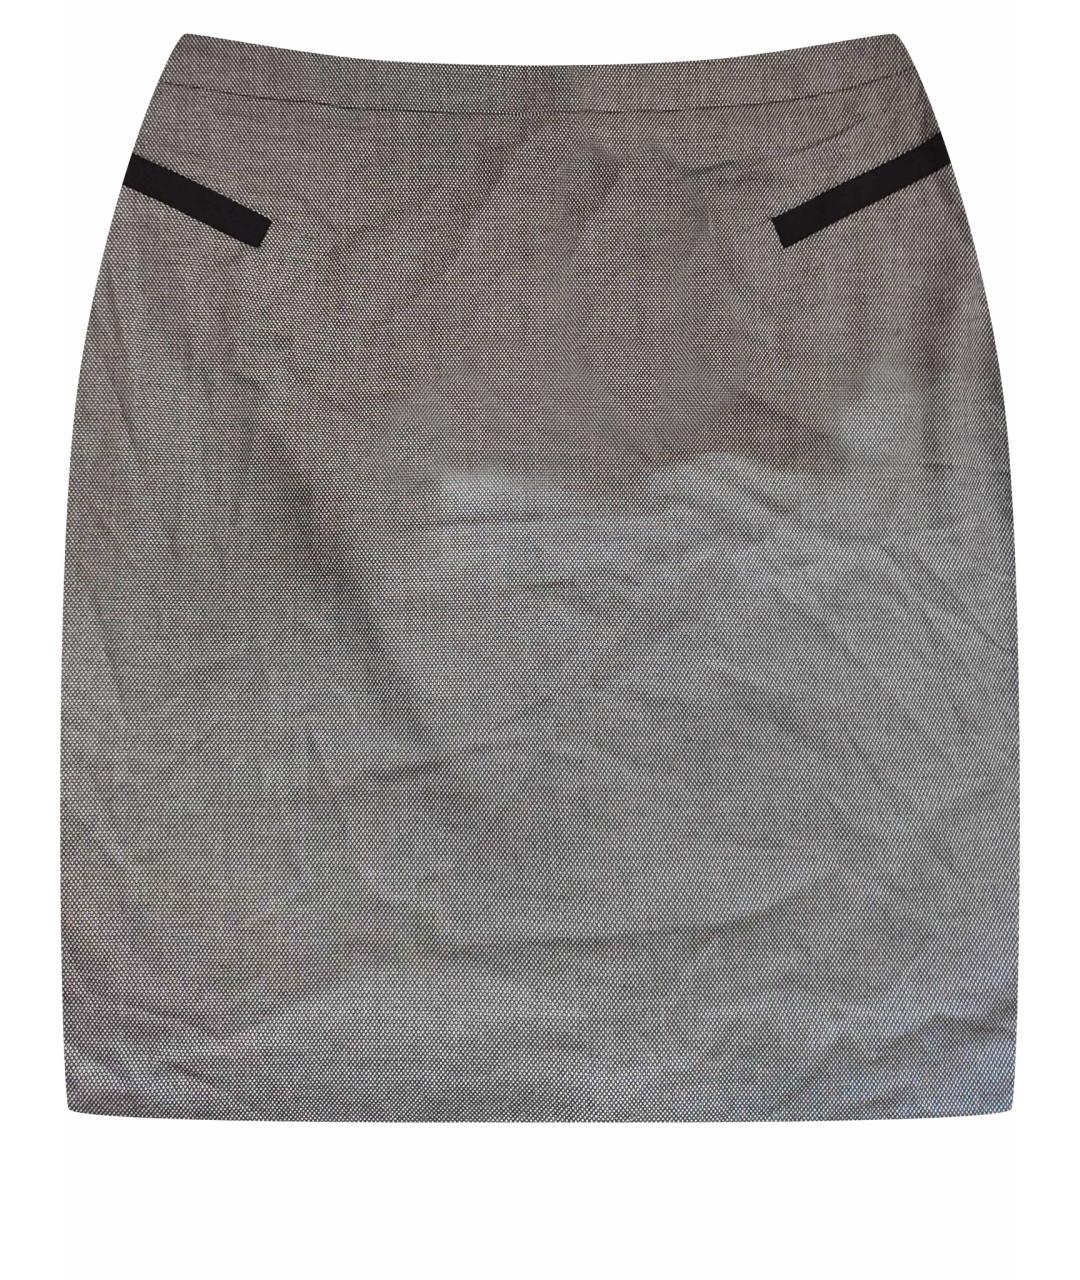 123 Антрацитовая полиэстеровая юбка миди, фото 1